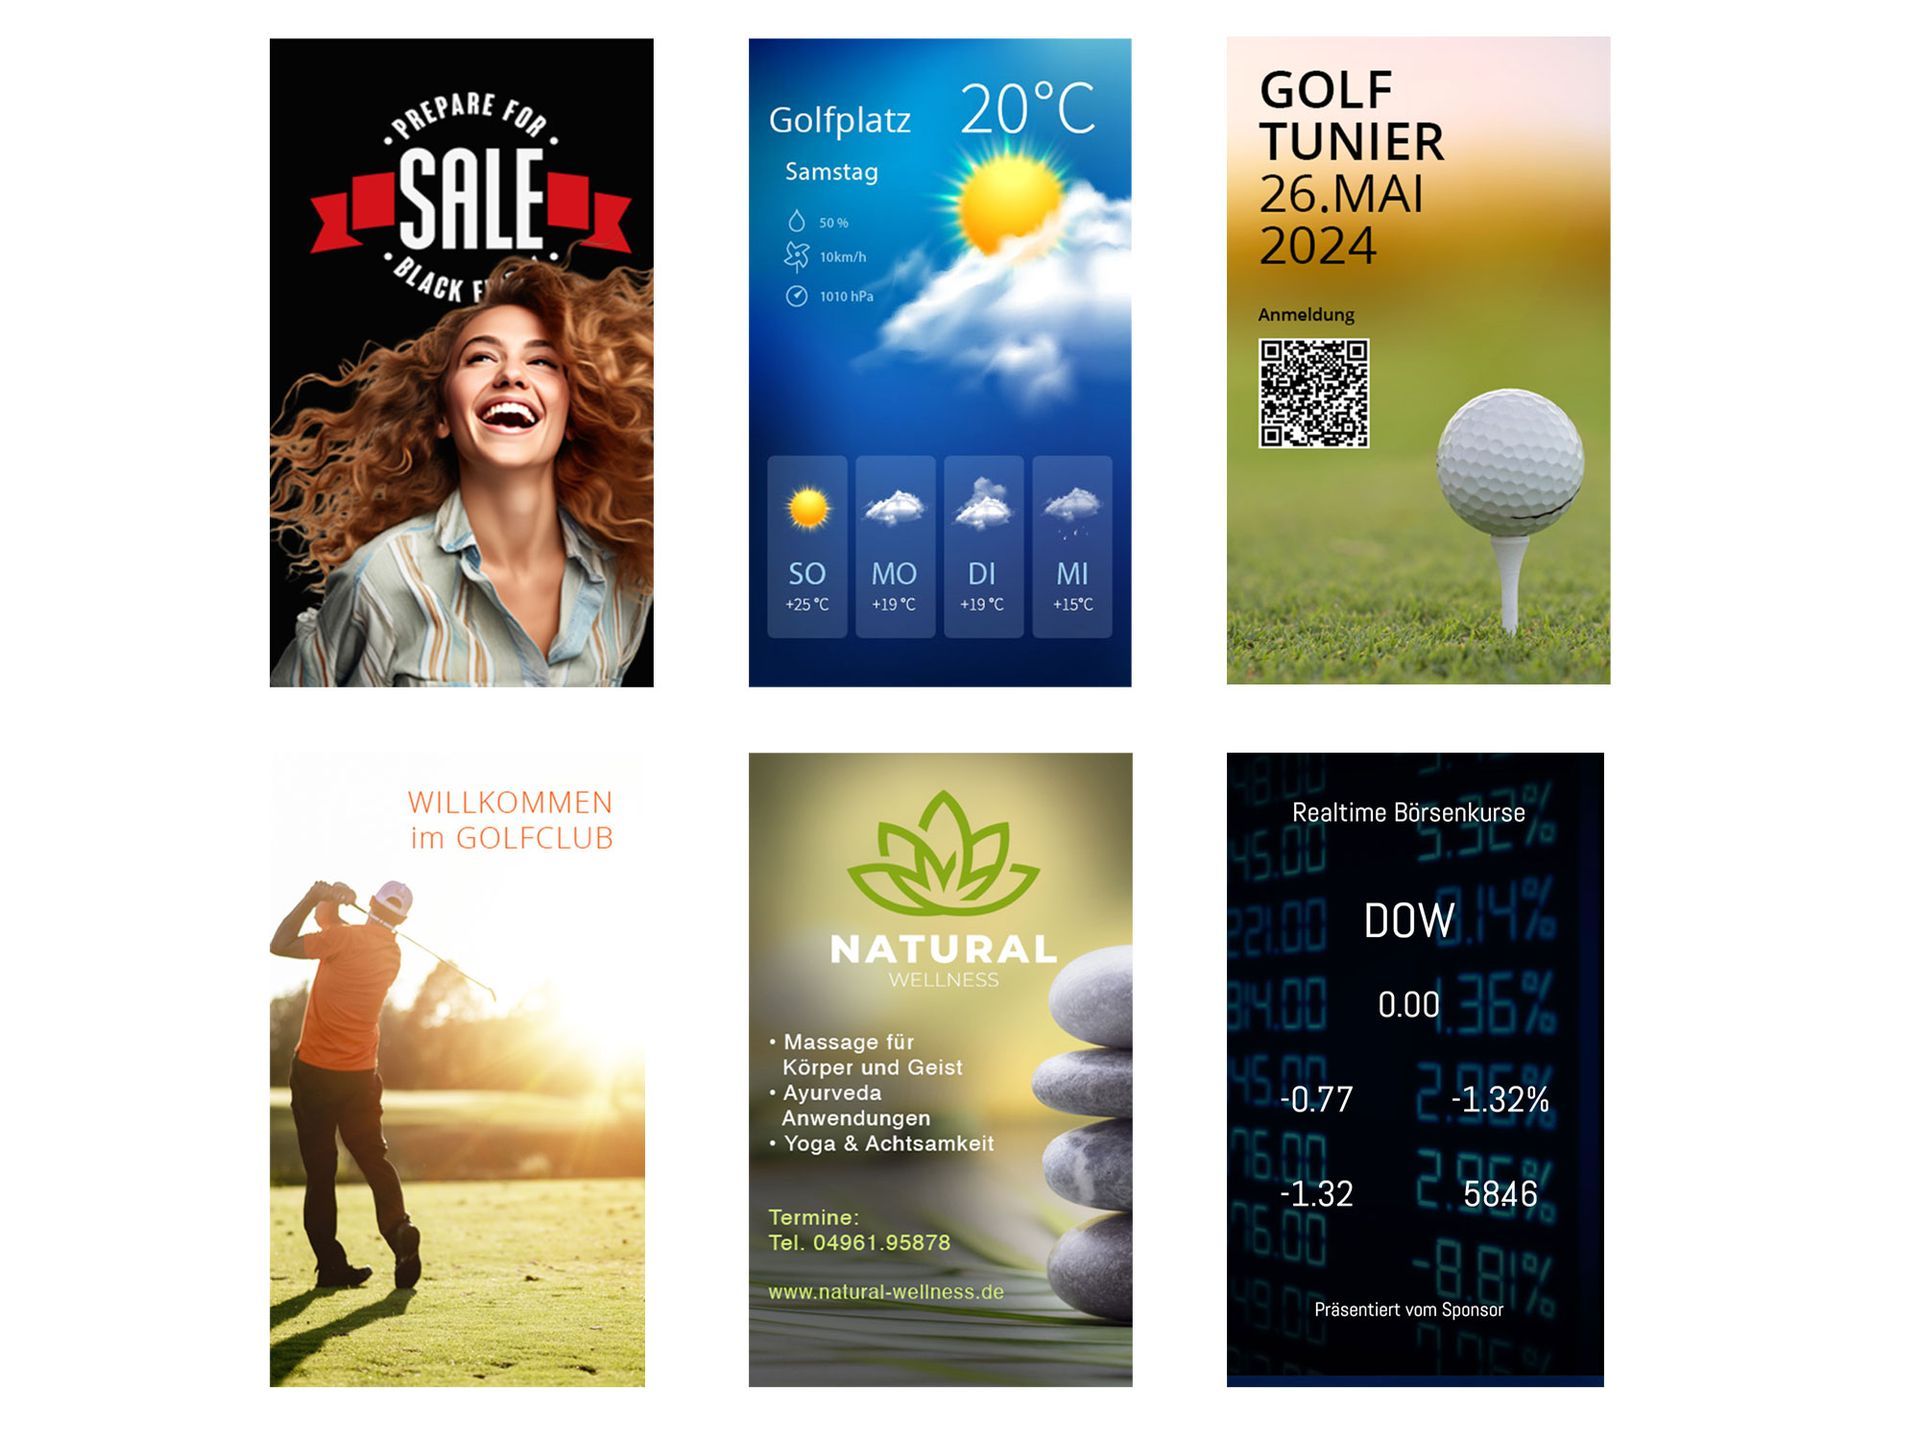 Eine Collage aus Bildern einer Golf spielenden Frau und einem Golfball auf einem Abschlag.